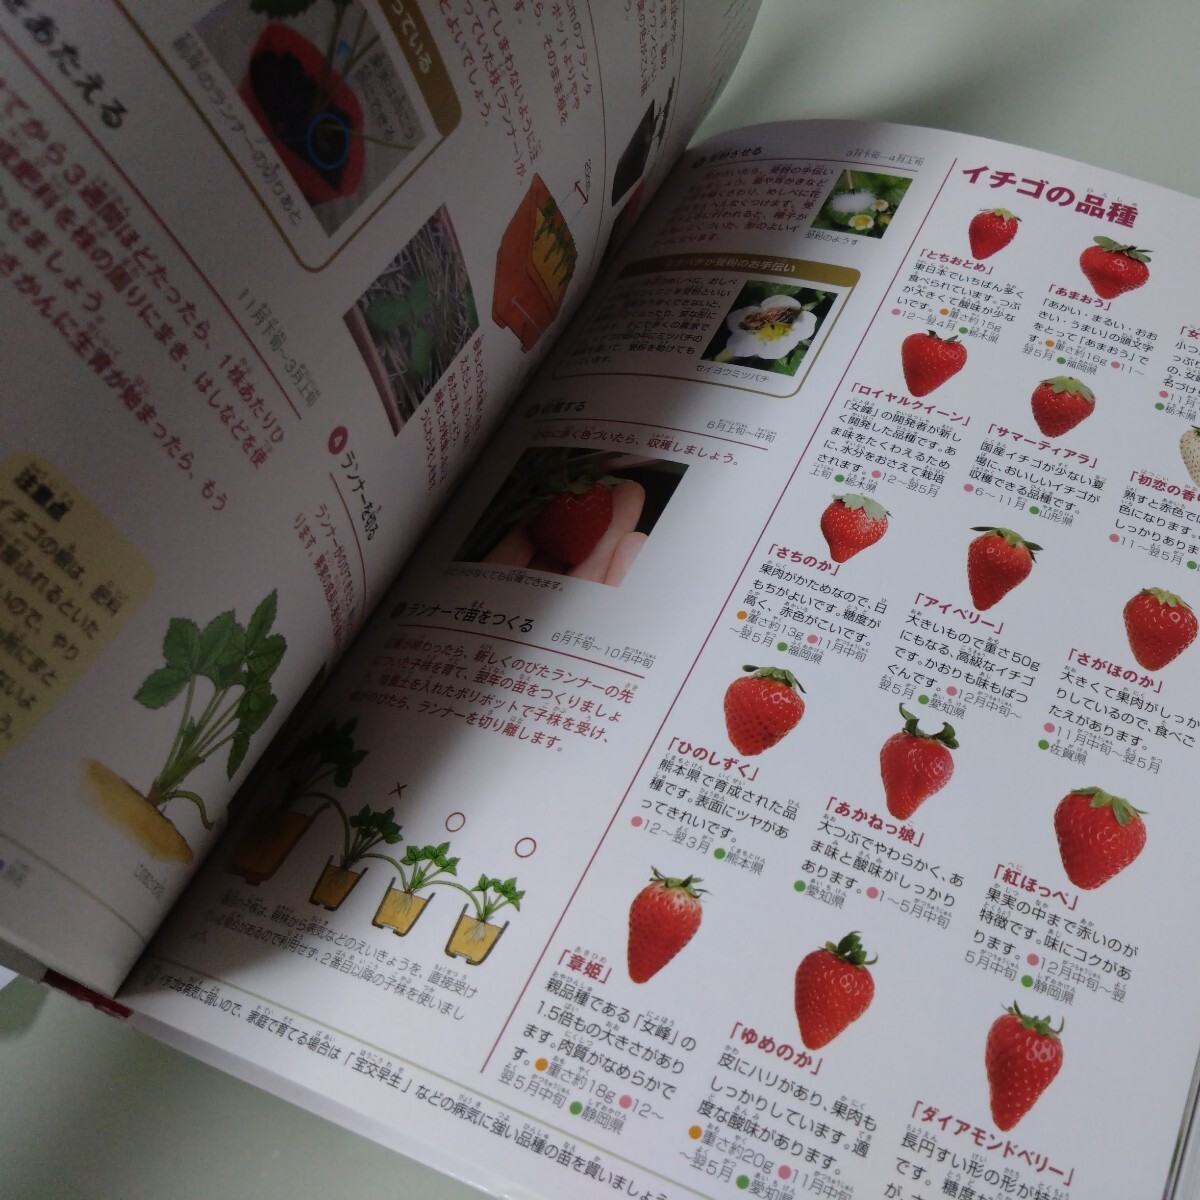 小学館の図鑑NEO 野菜と果物 児童書 学習 絵本